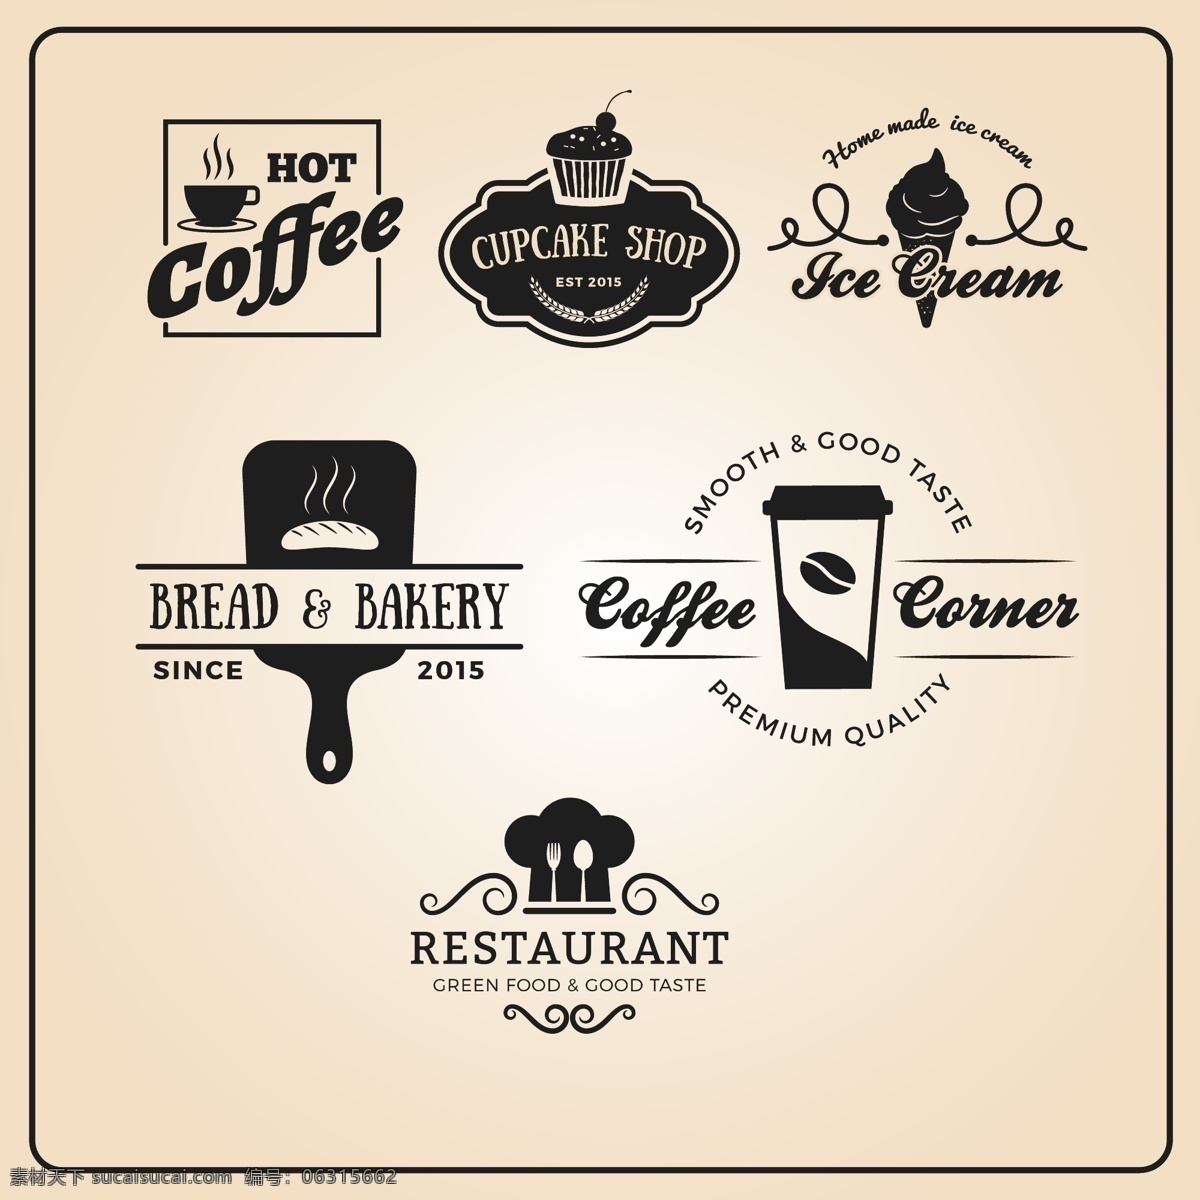 复古 餐厅 标志 英文 冰激凌 面包 矢量素材 咖啡 甜点 餐厅标志